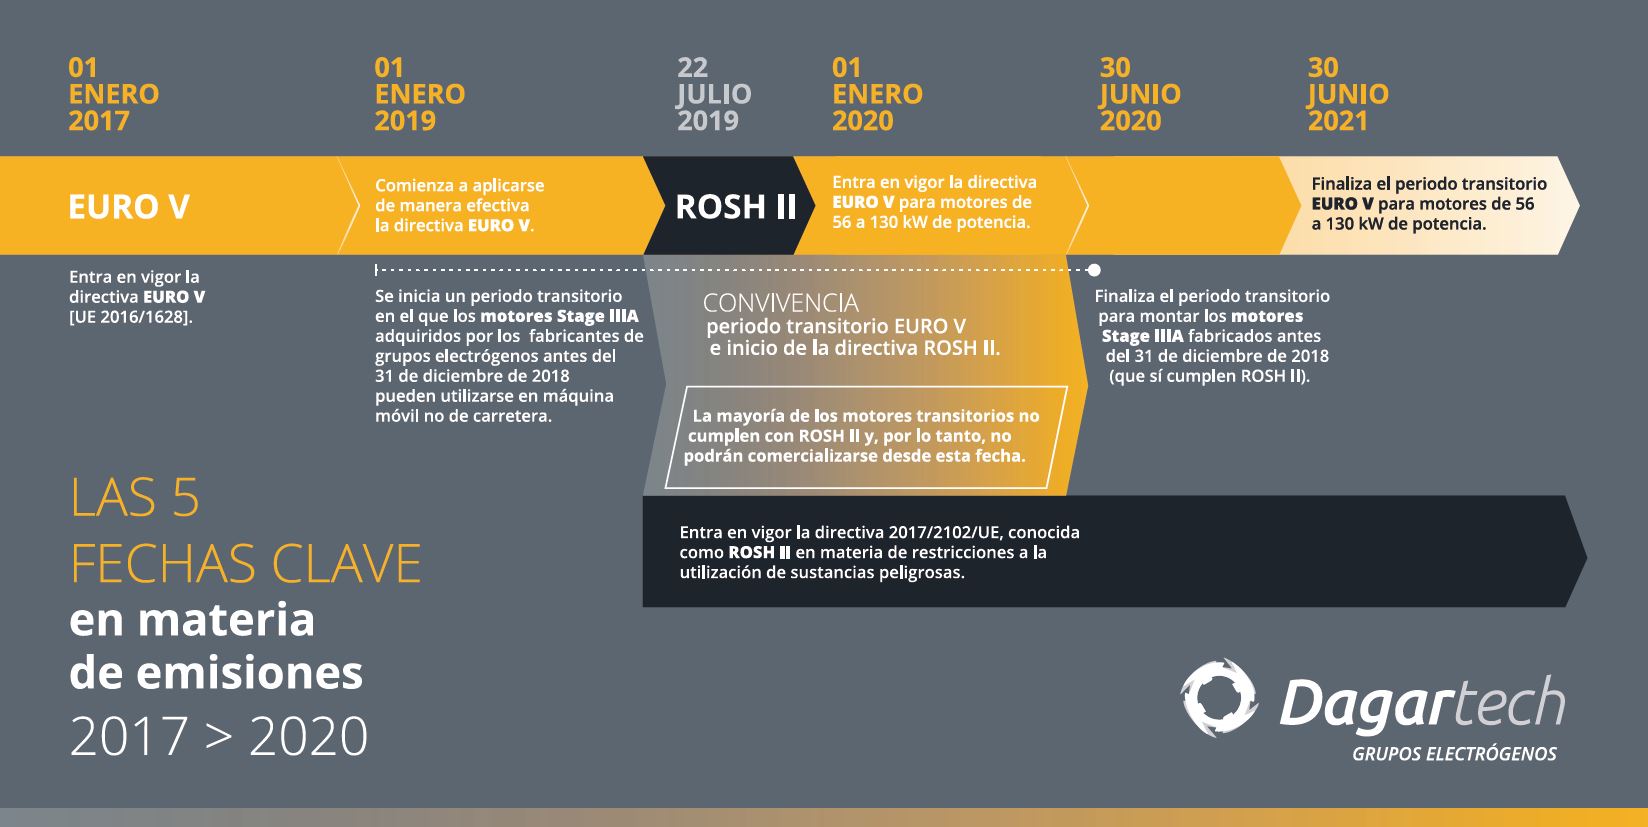 Infografía de las 5 fechas clave en materia de Emisiones de Euro V y ROSH II